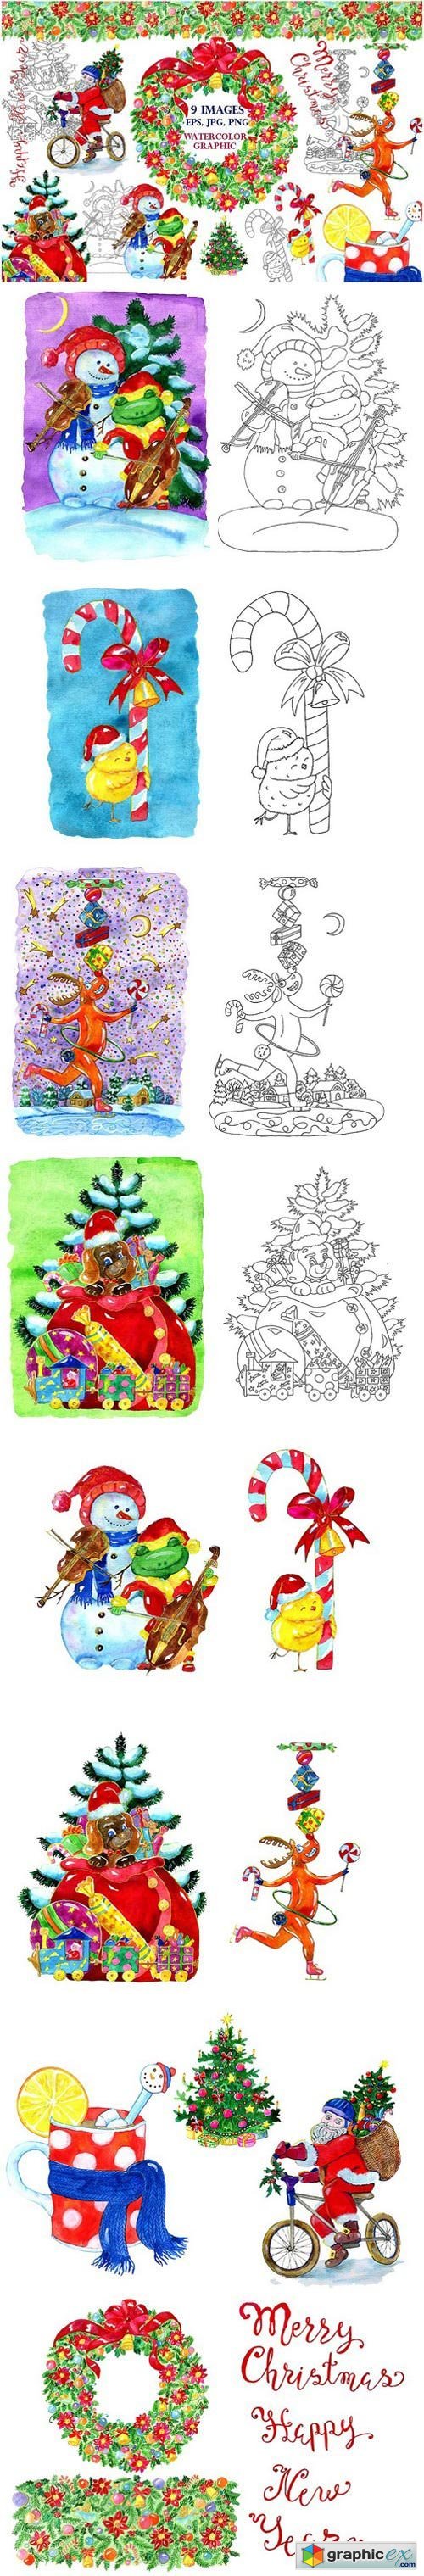 Christmas characters set